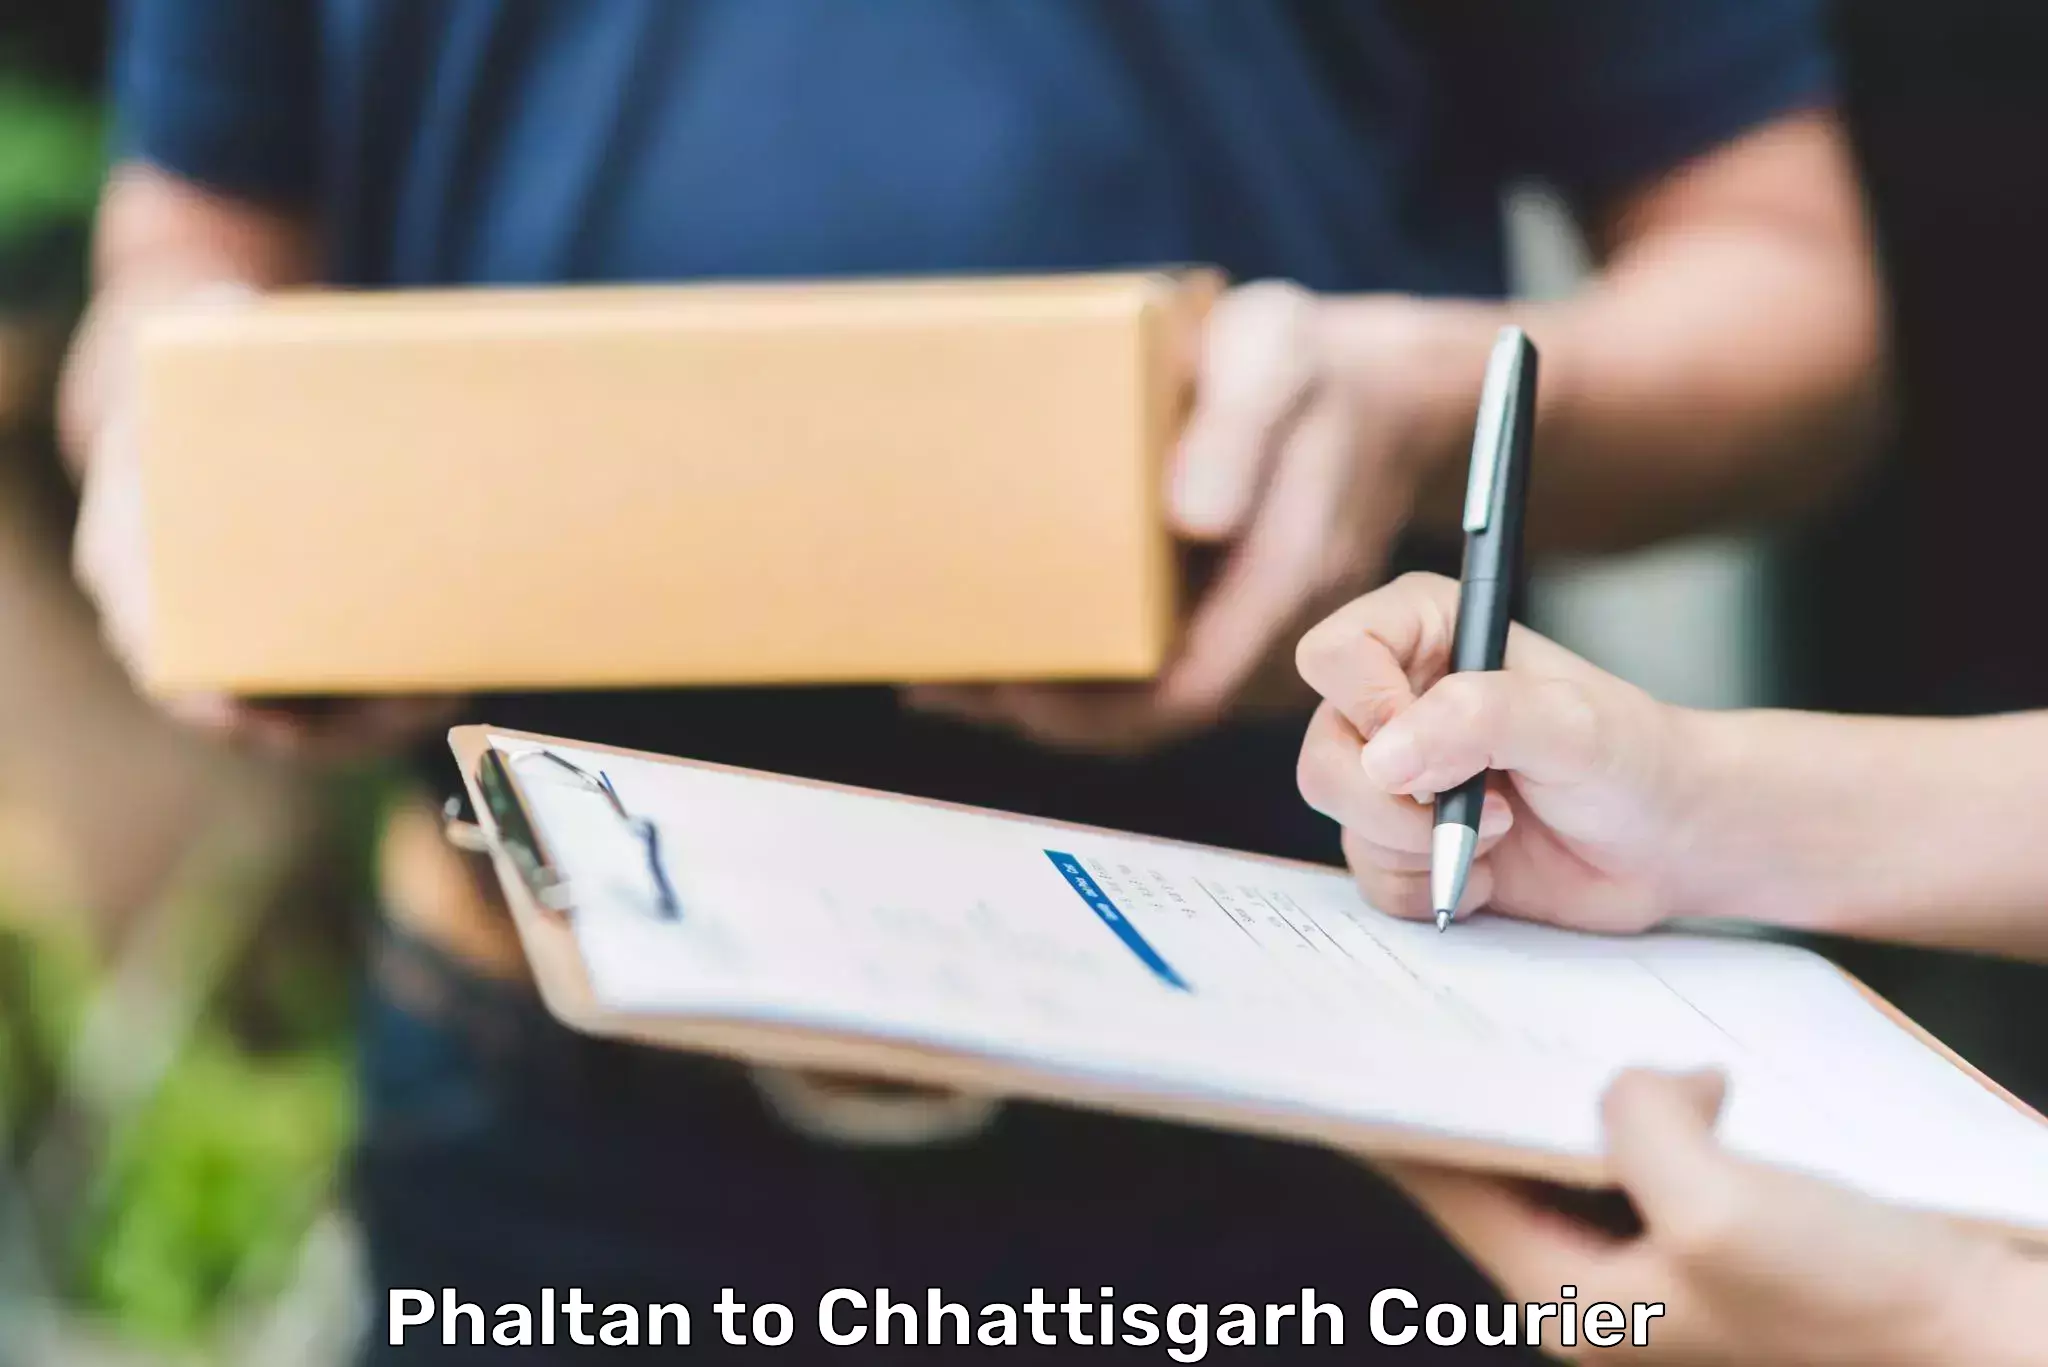 Customer-focused courier in Phaltan to Chhattisgarh